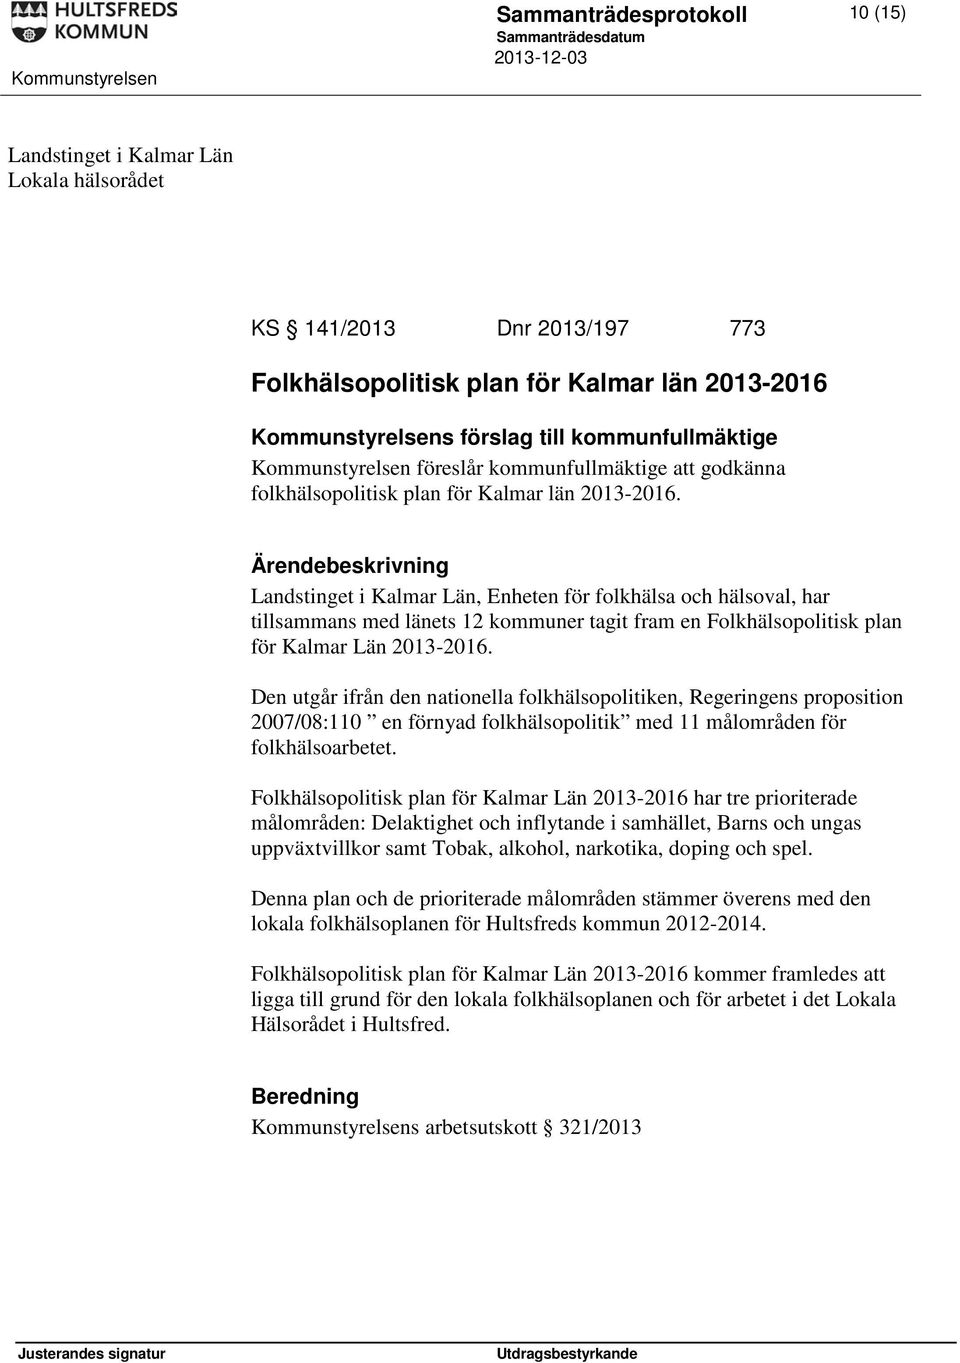 Landstinget i Kalmar Län, Enheten för folkhälsa och hälsoval, har tillsammans med länets 12 kommuner tagit fram en Folkhälsopolitisk plan för Kalmar Län 2013-2016.